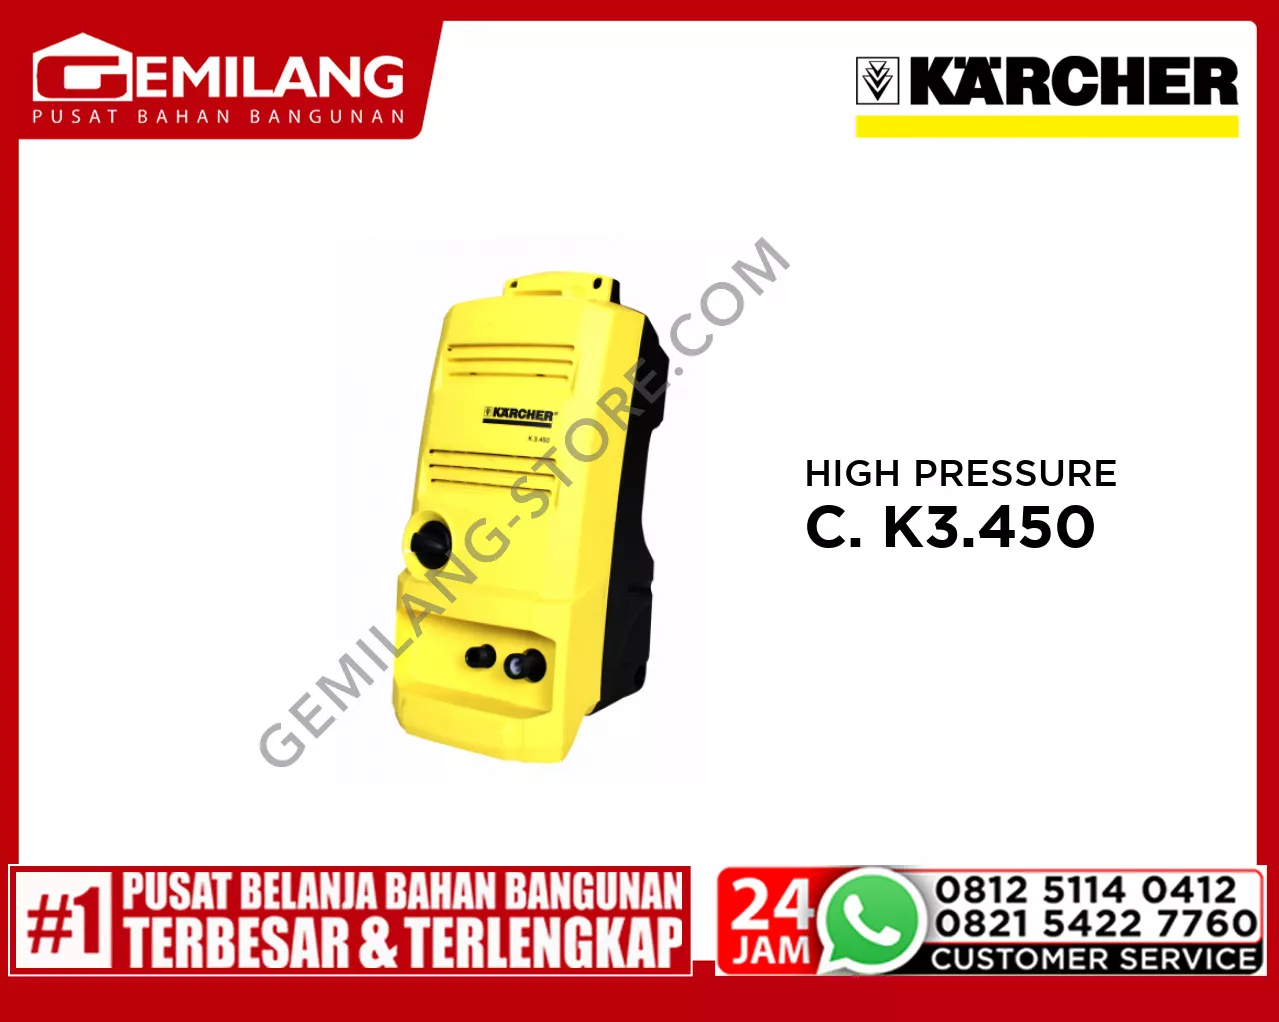 KARCHER HIGH PRESSURE CLEANER K3.450